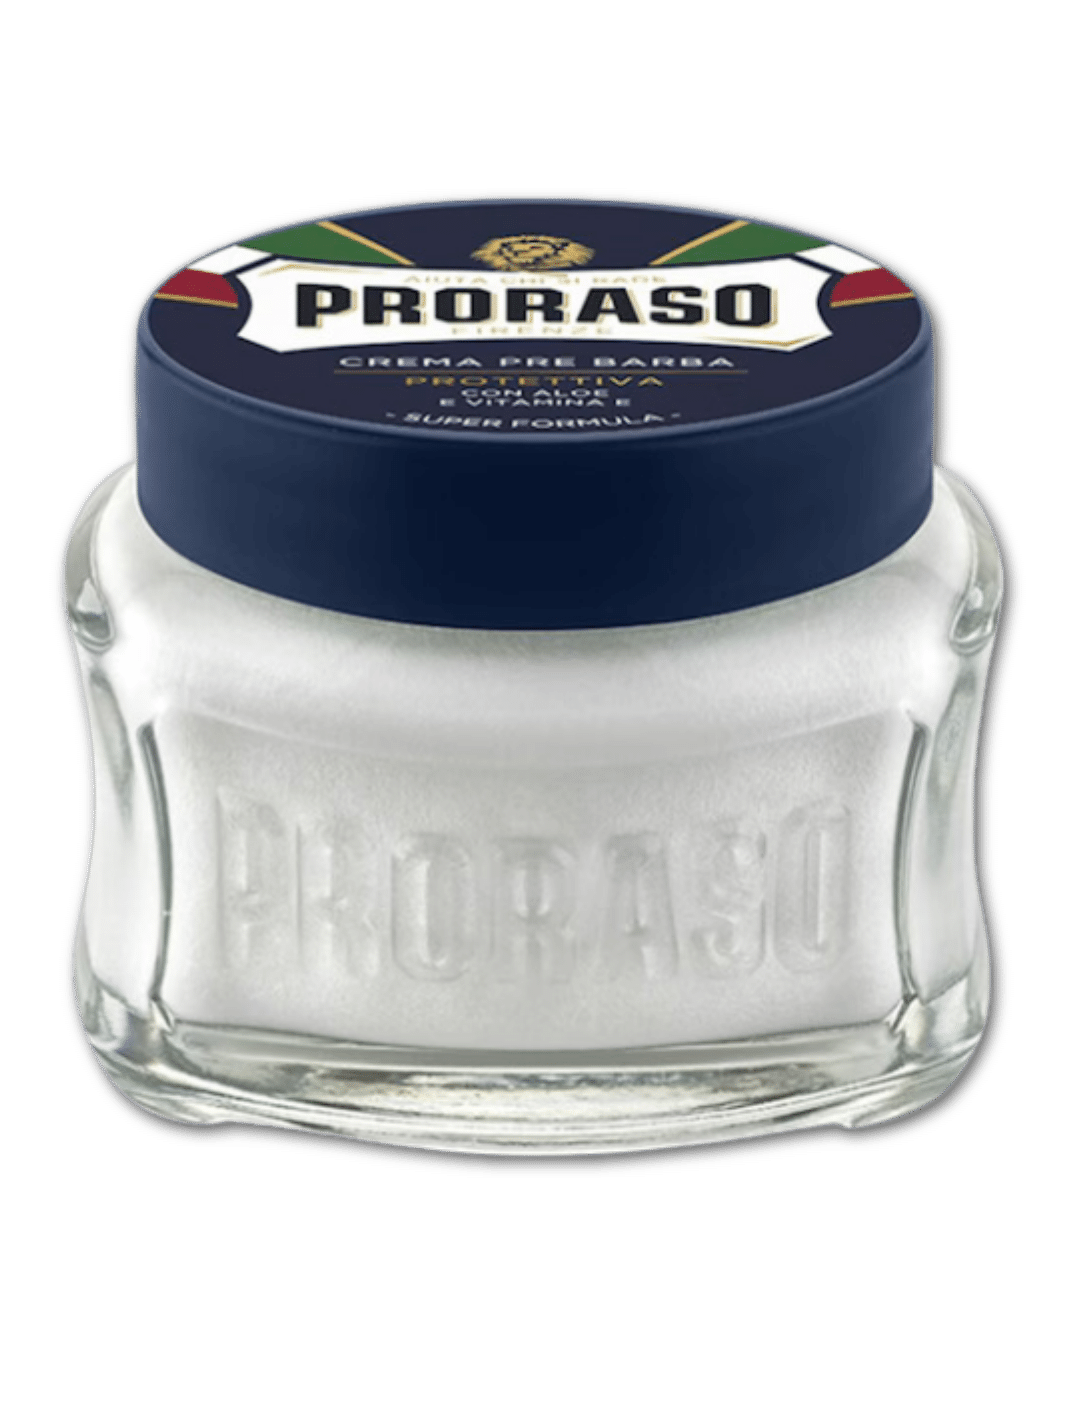 Proraso Protective Preshave Creme bei Phullcutz erhältlich für eine sanfte und geschützte Rasur.